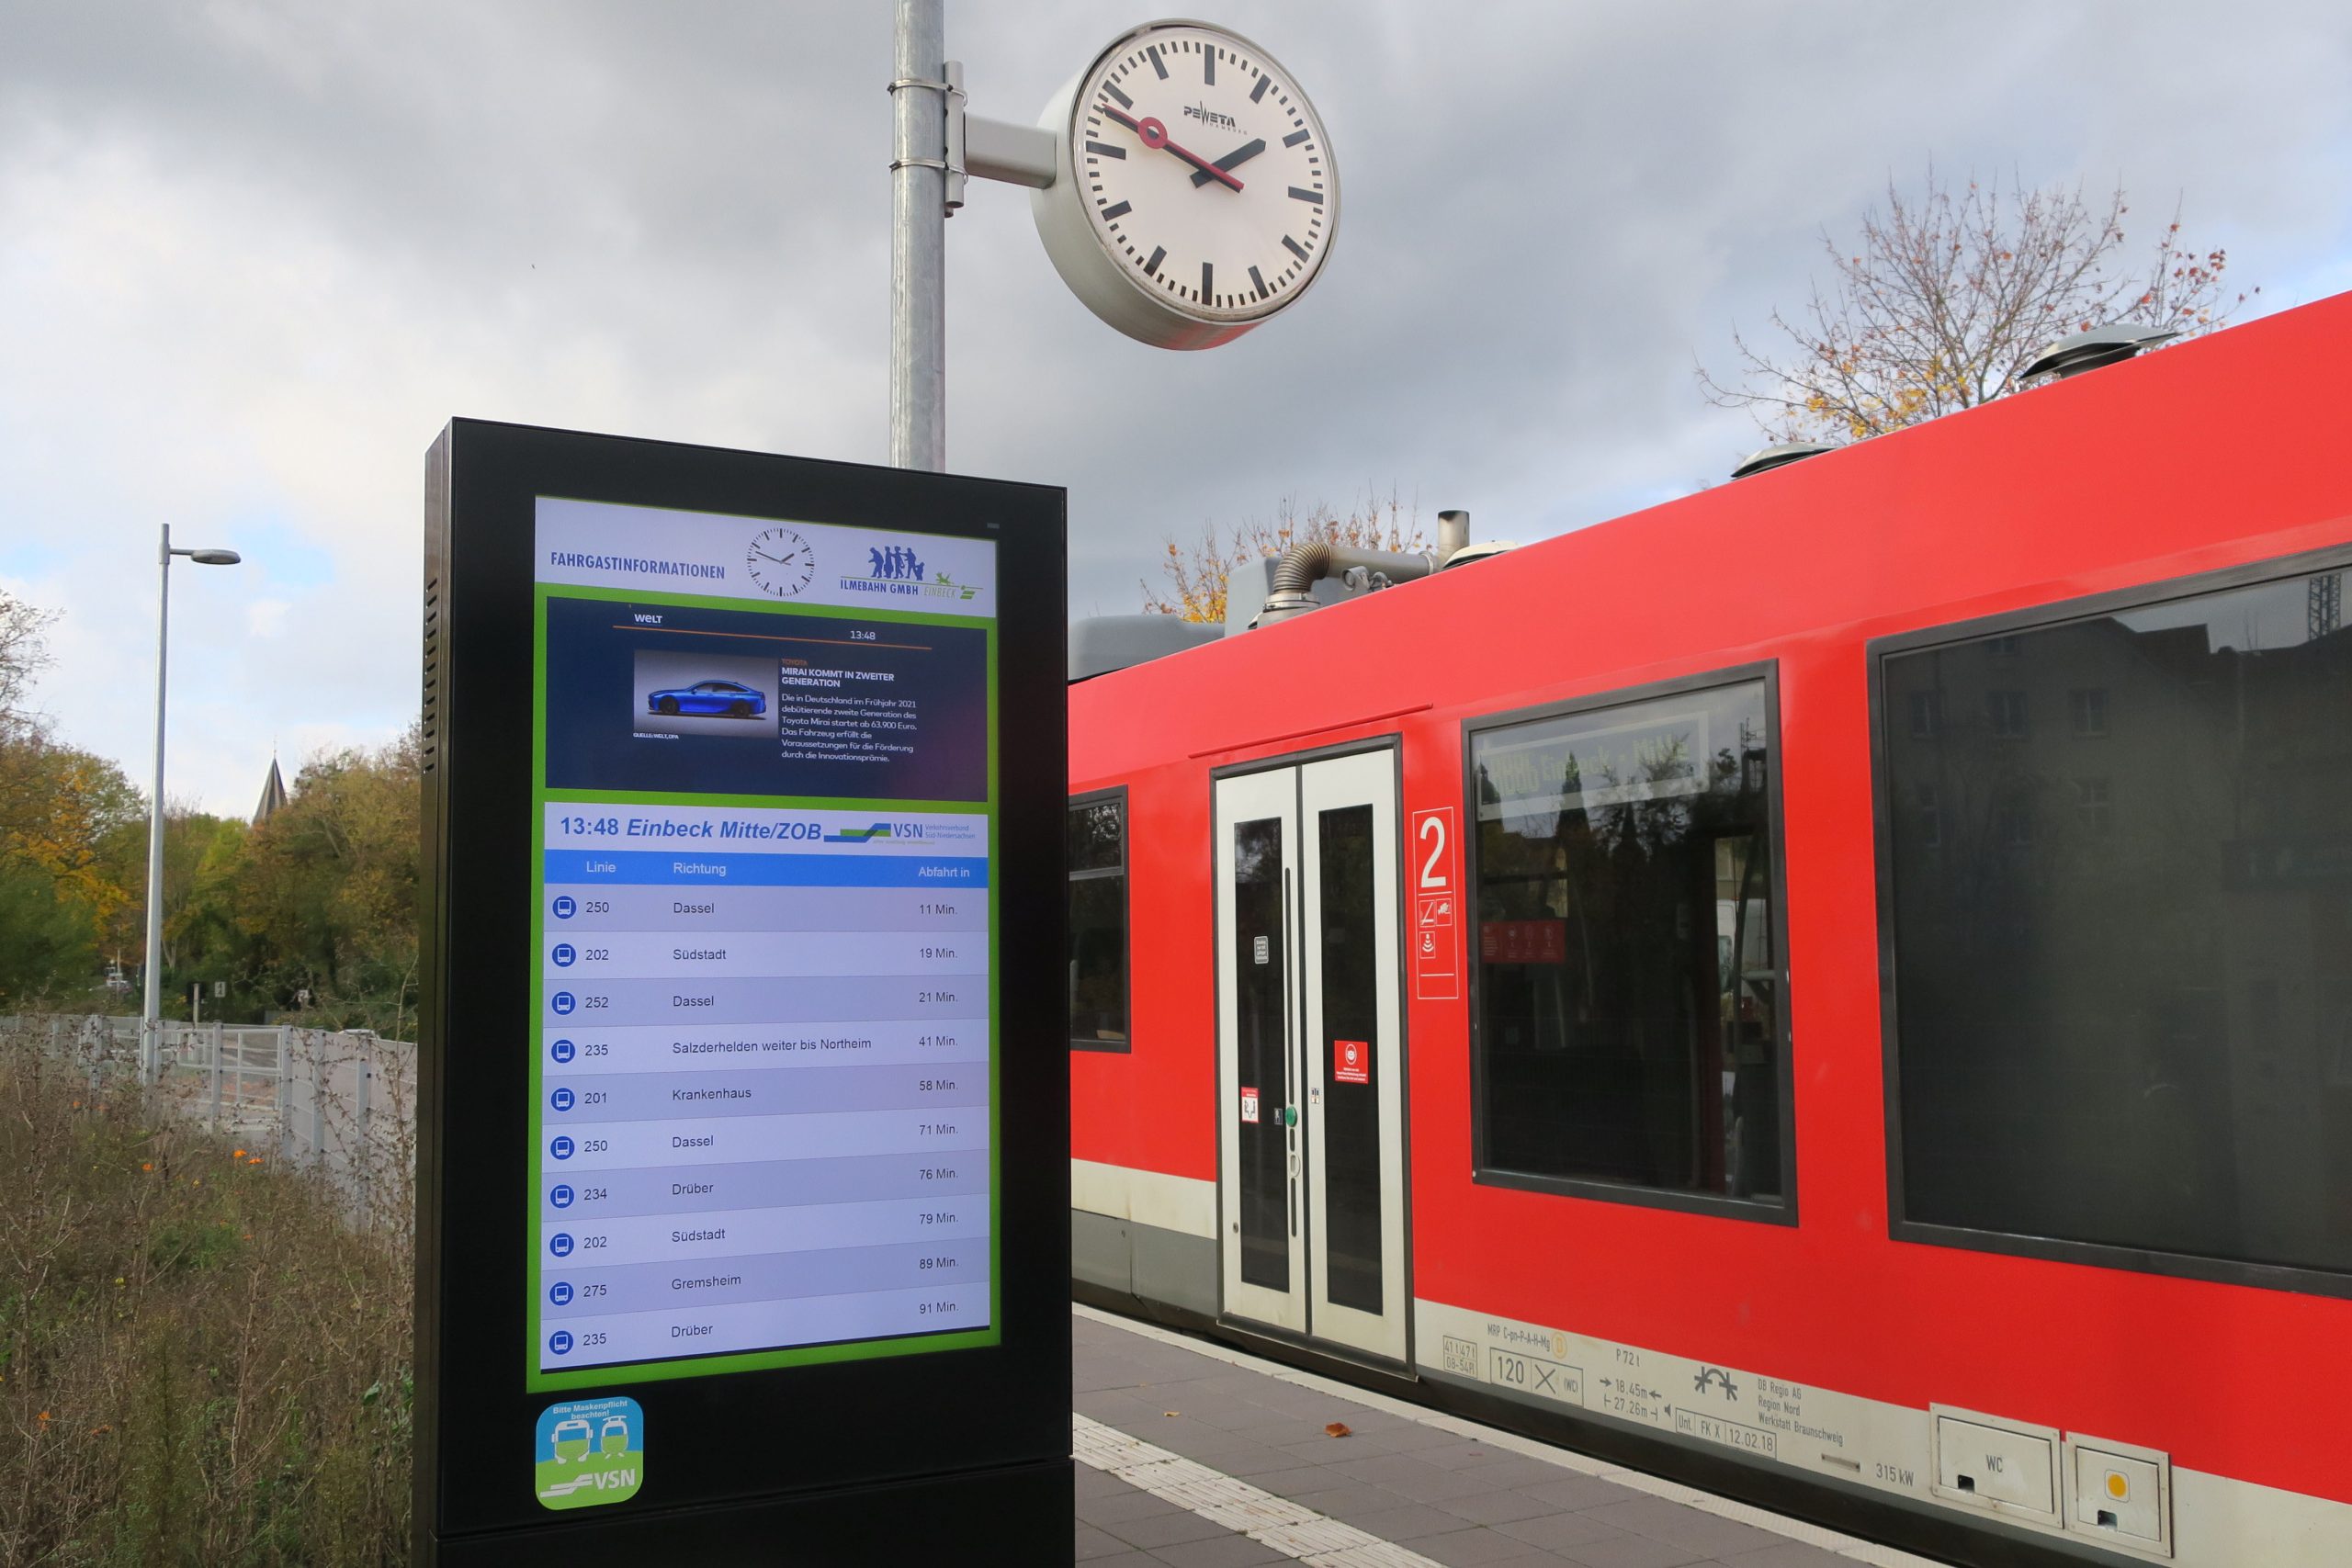 Attraktive Station Einbeck Mitte